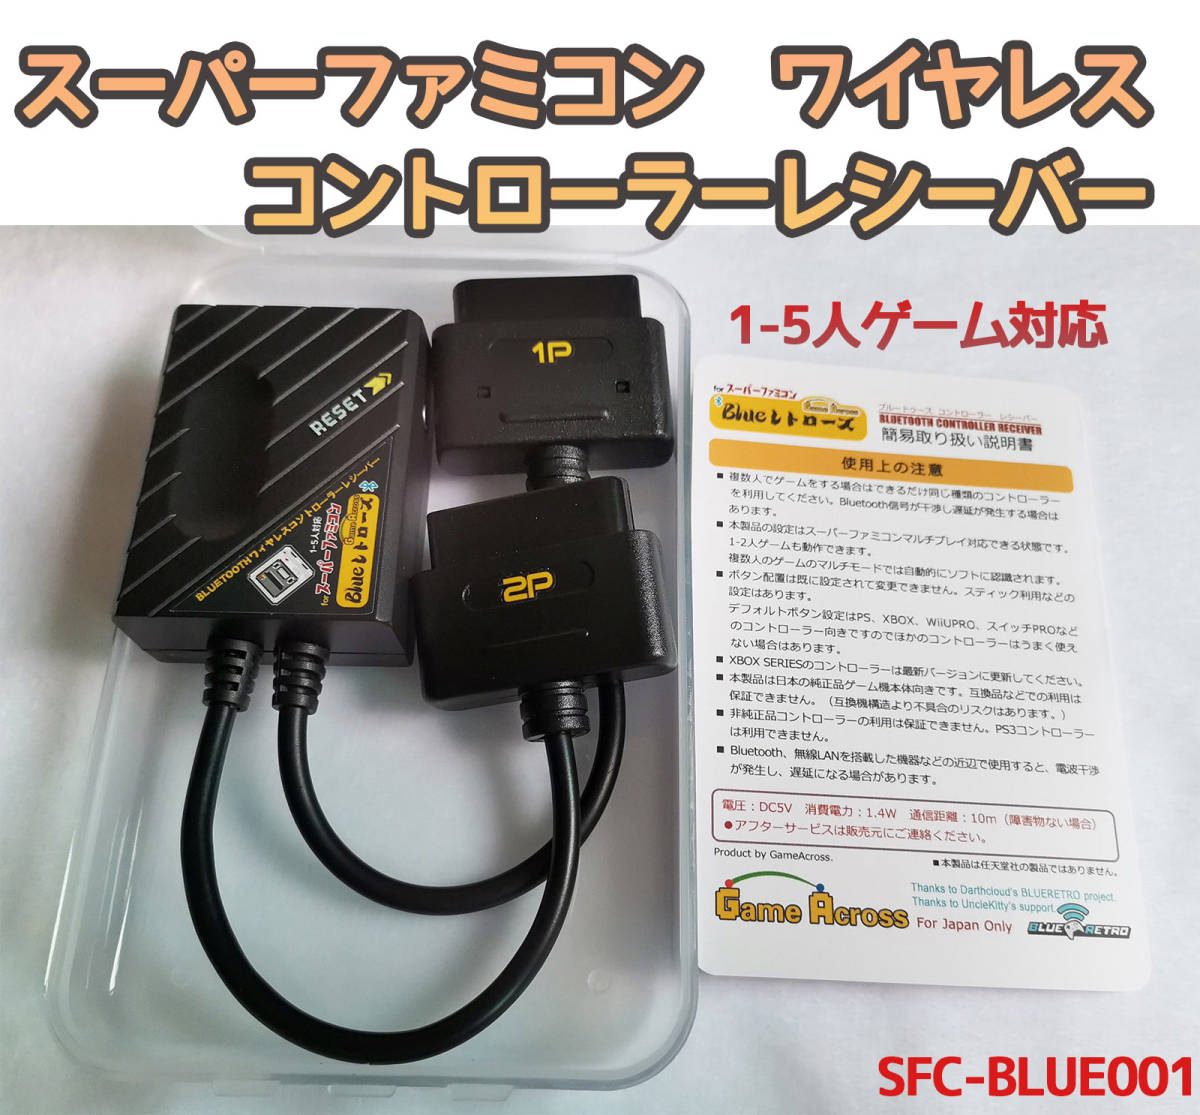 スーパーファミコン 1-5人 ワイヤレスコントローラー レシーバー PS4 PS5 XBOX スイッチPRO など 対応 (SFC-BLUE001)の画像1